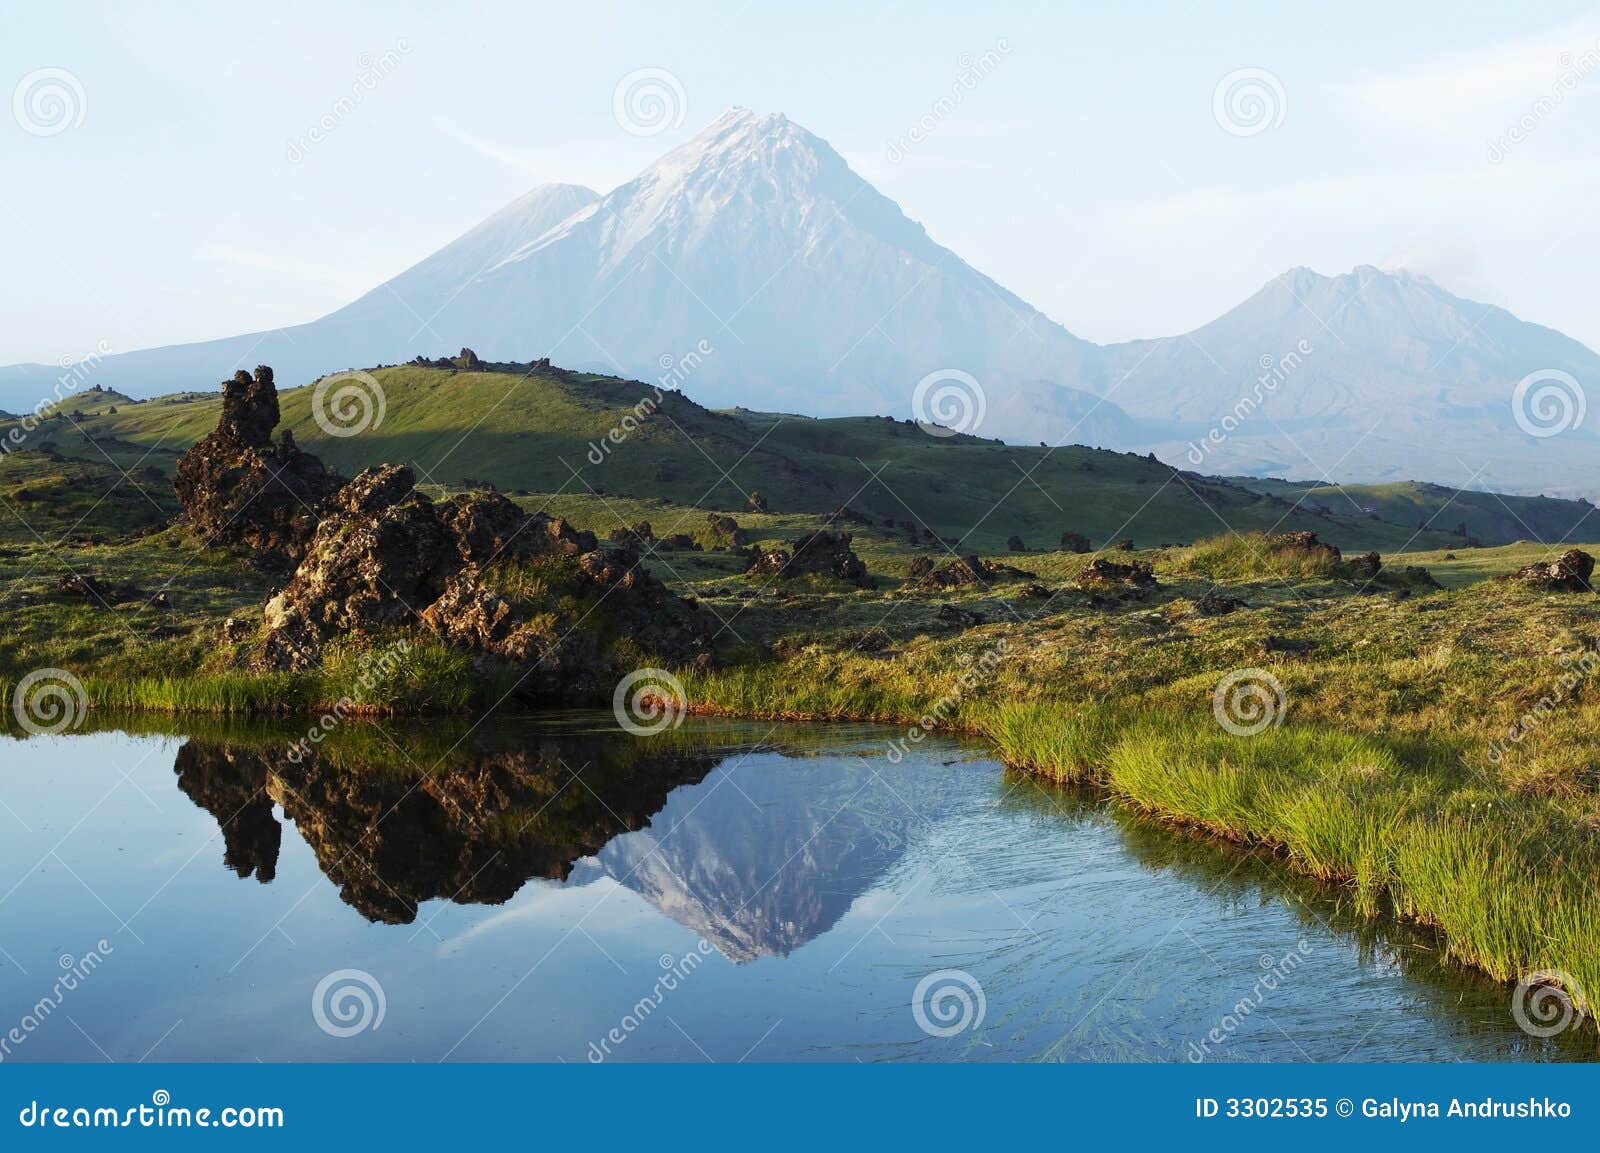 Volcano on Kamchatka. Volcano Kluchevskoj and Kamen on Kamchatka